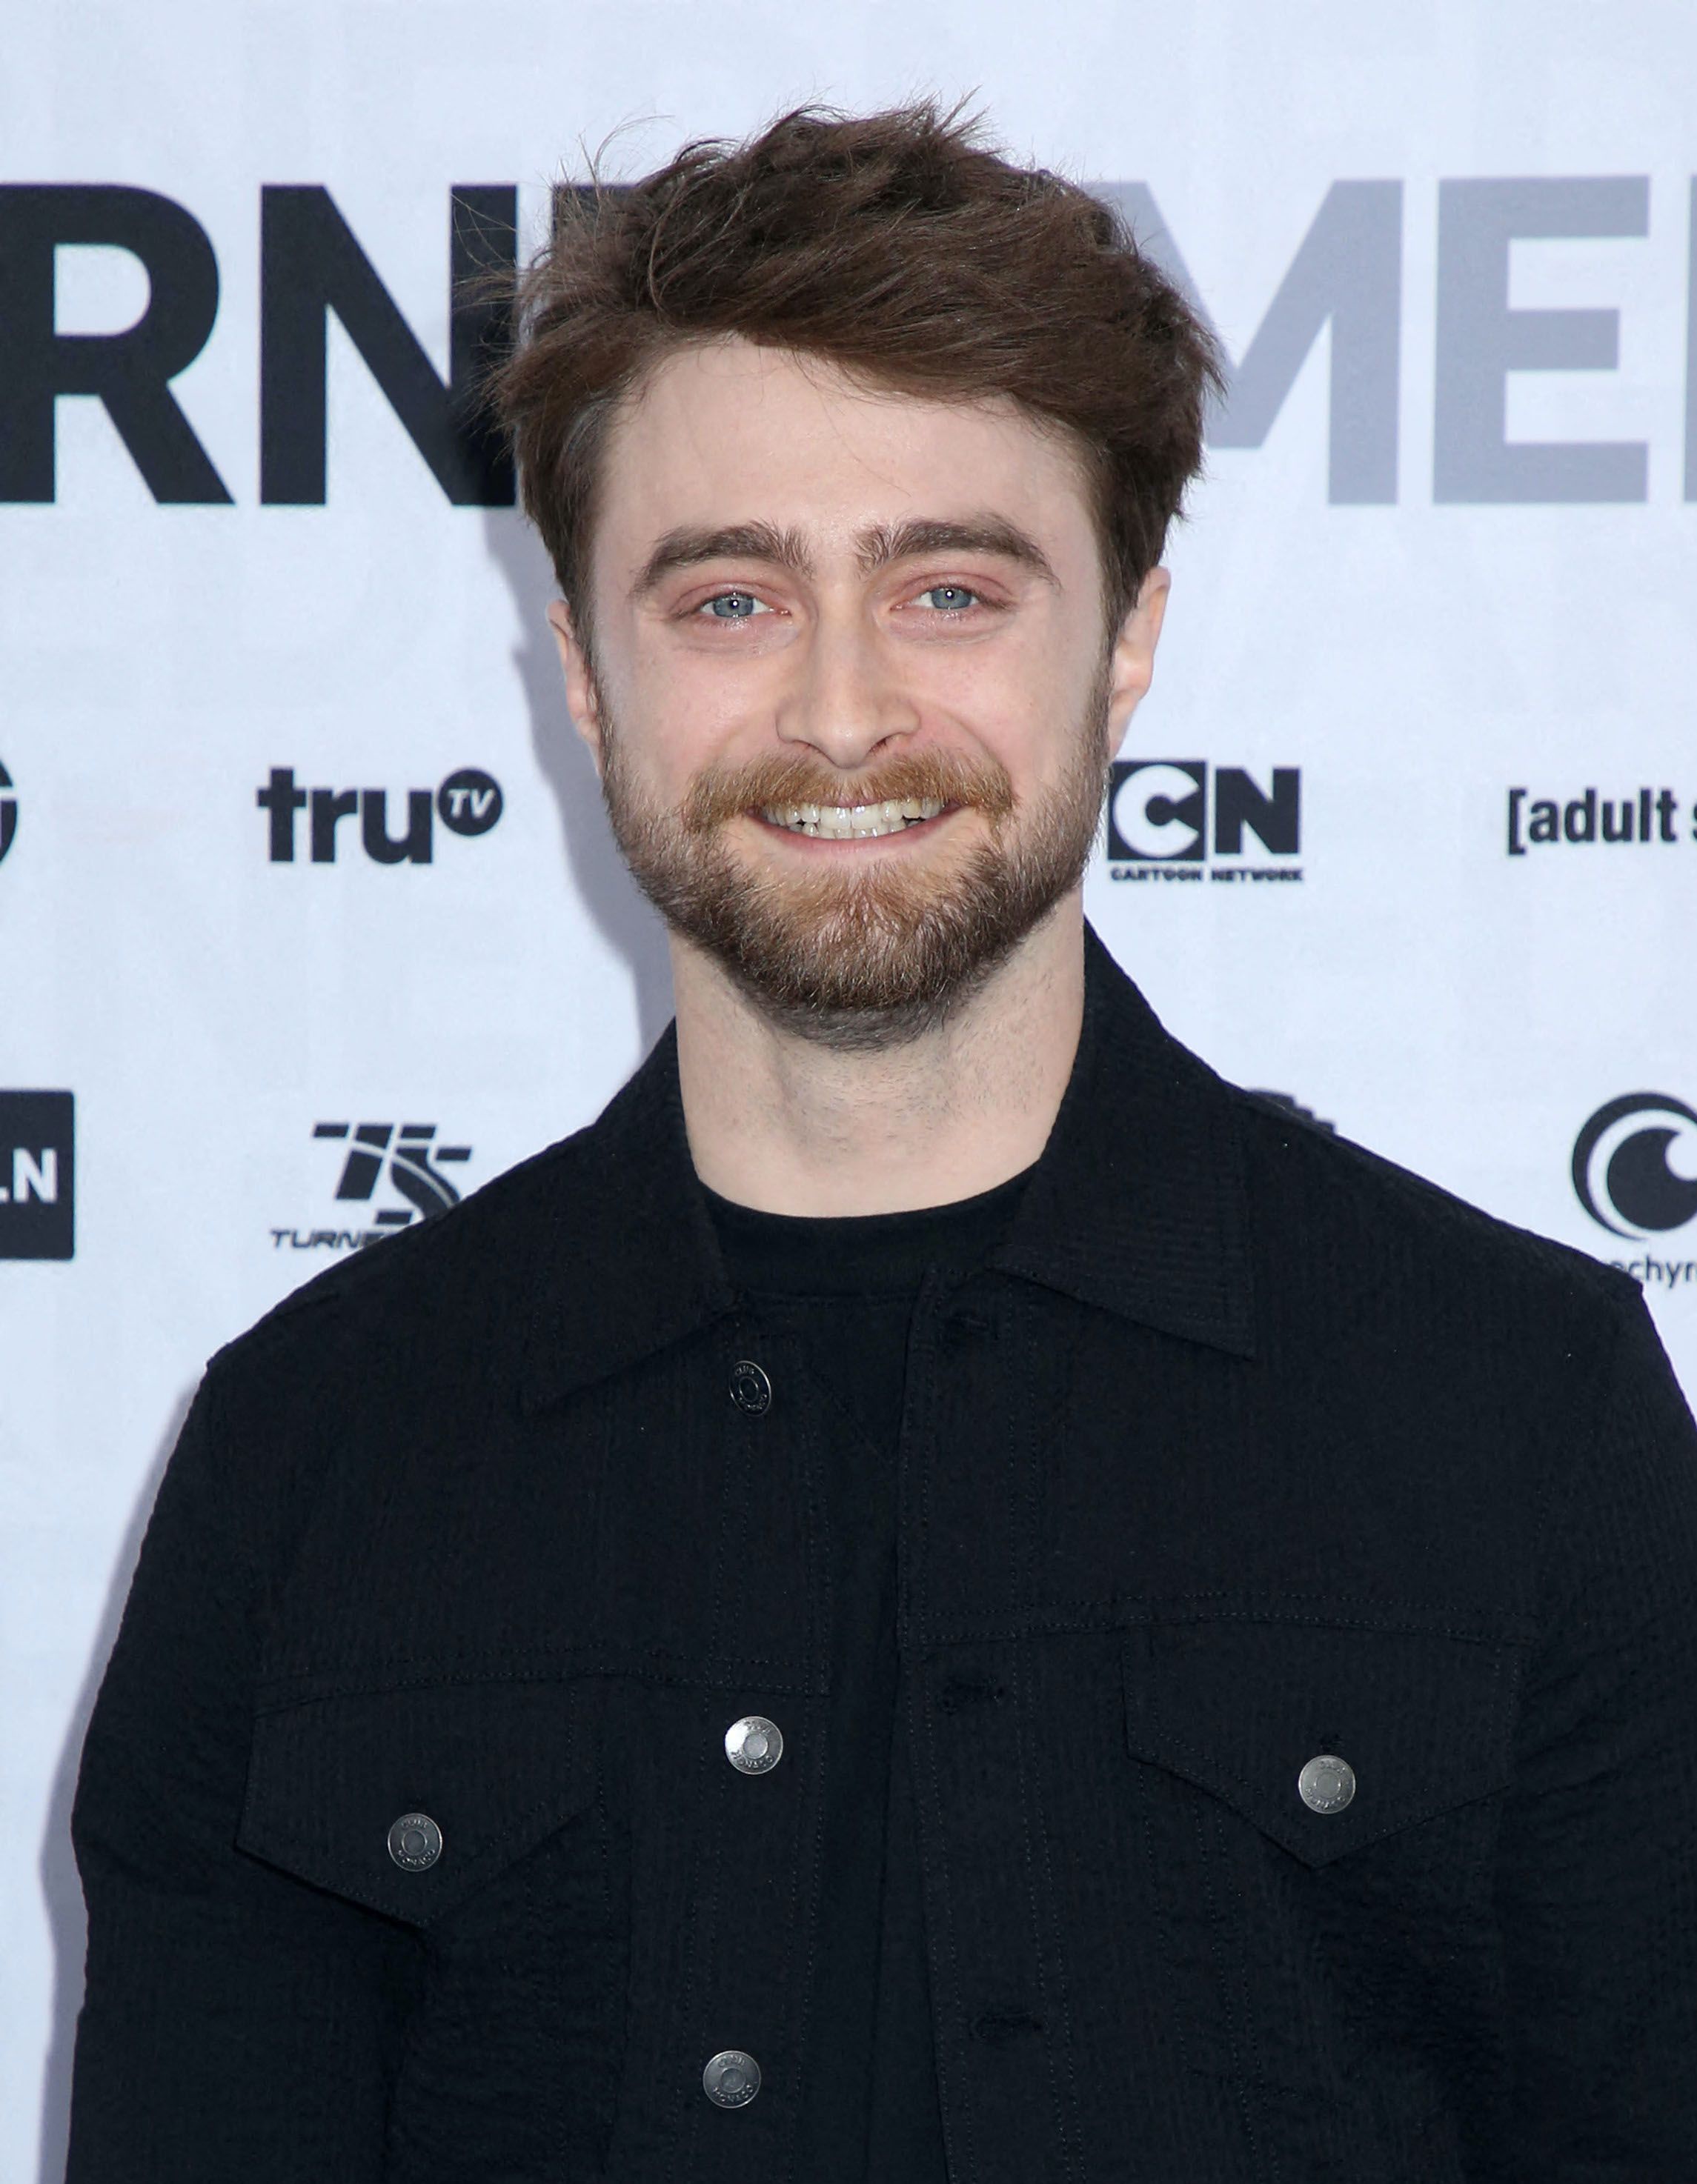 Enfant star : Daniel Radcliffe, les tourments du célèbre sorcier